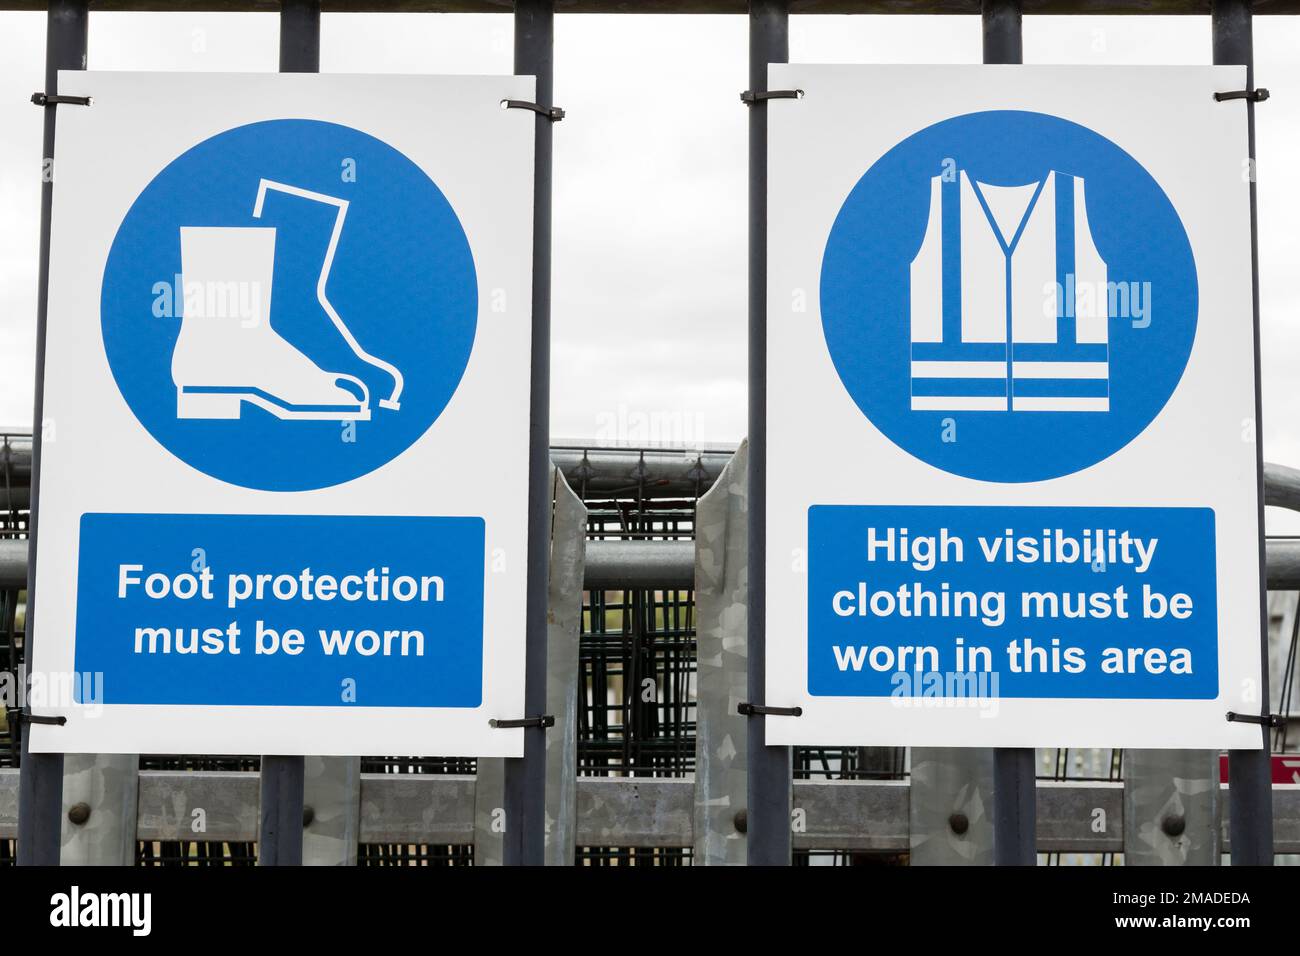 Am Eingang zu einem Arbeitsplatz, Schottland, Großbritannien, Europa, müssen Warnkleidung und Fußschutz getragen werden Stockfoto